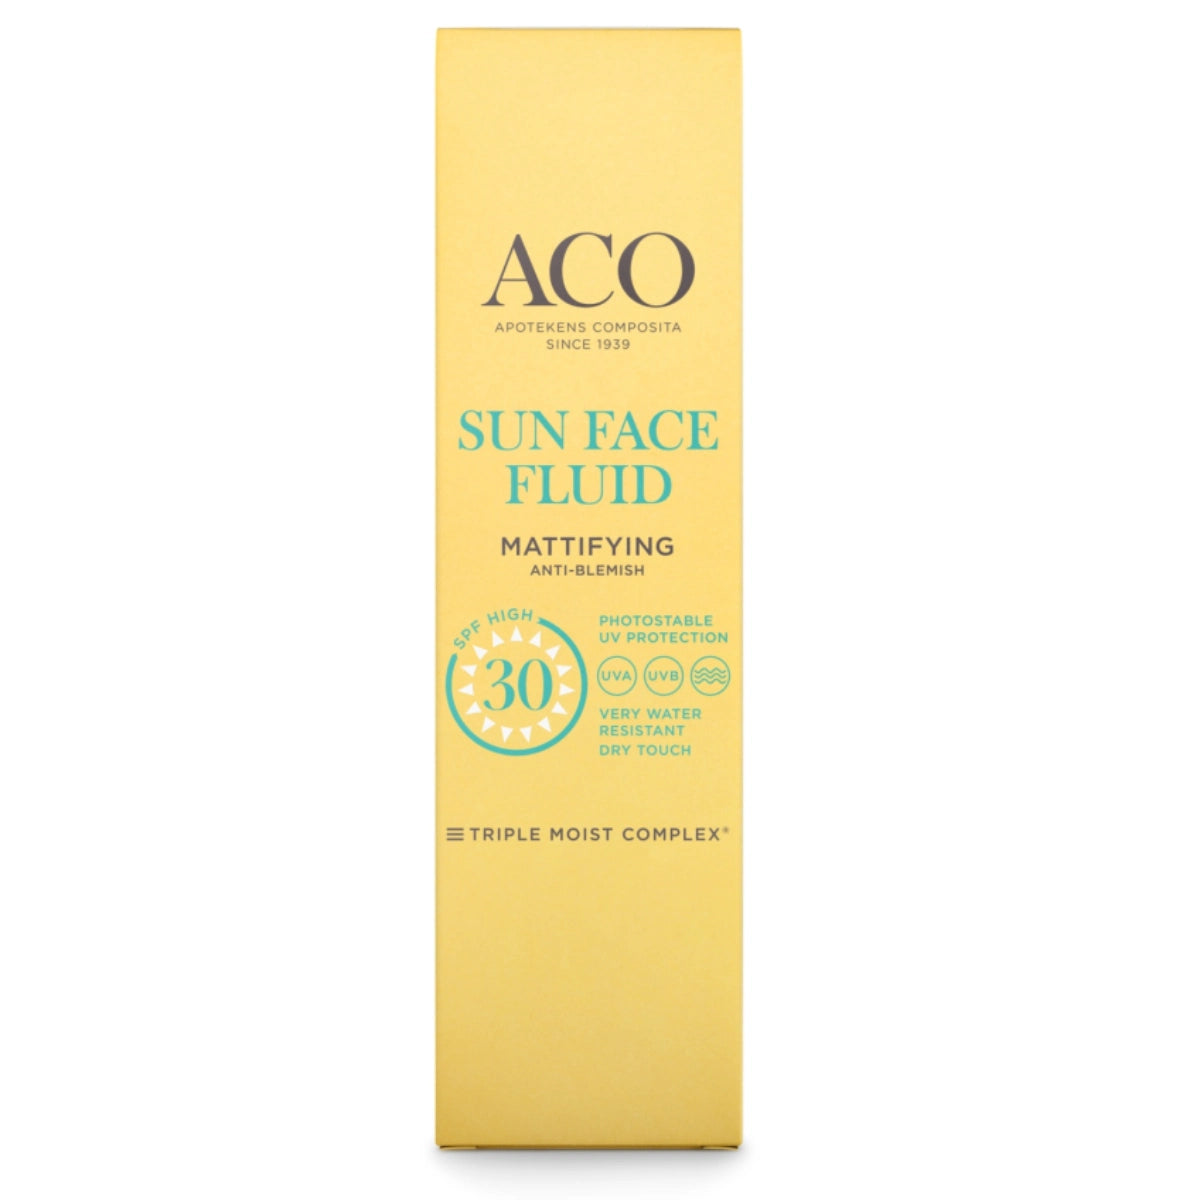 ACO Sun Face Fluid Mattifying SPF30 aurinkovoide kasvoille 40 ml vähentää kiiletyä ja jättää mattapinnan kasvoille